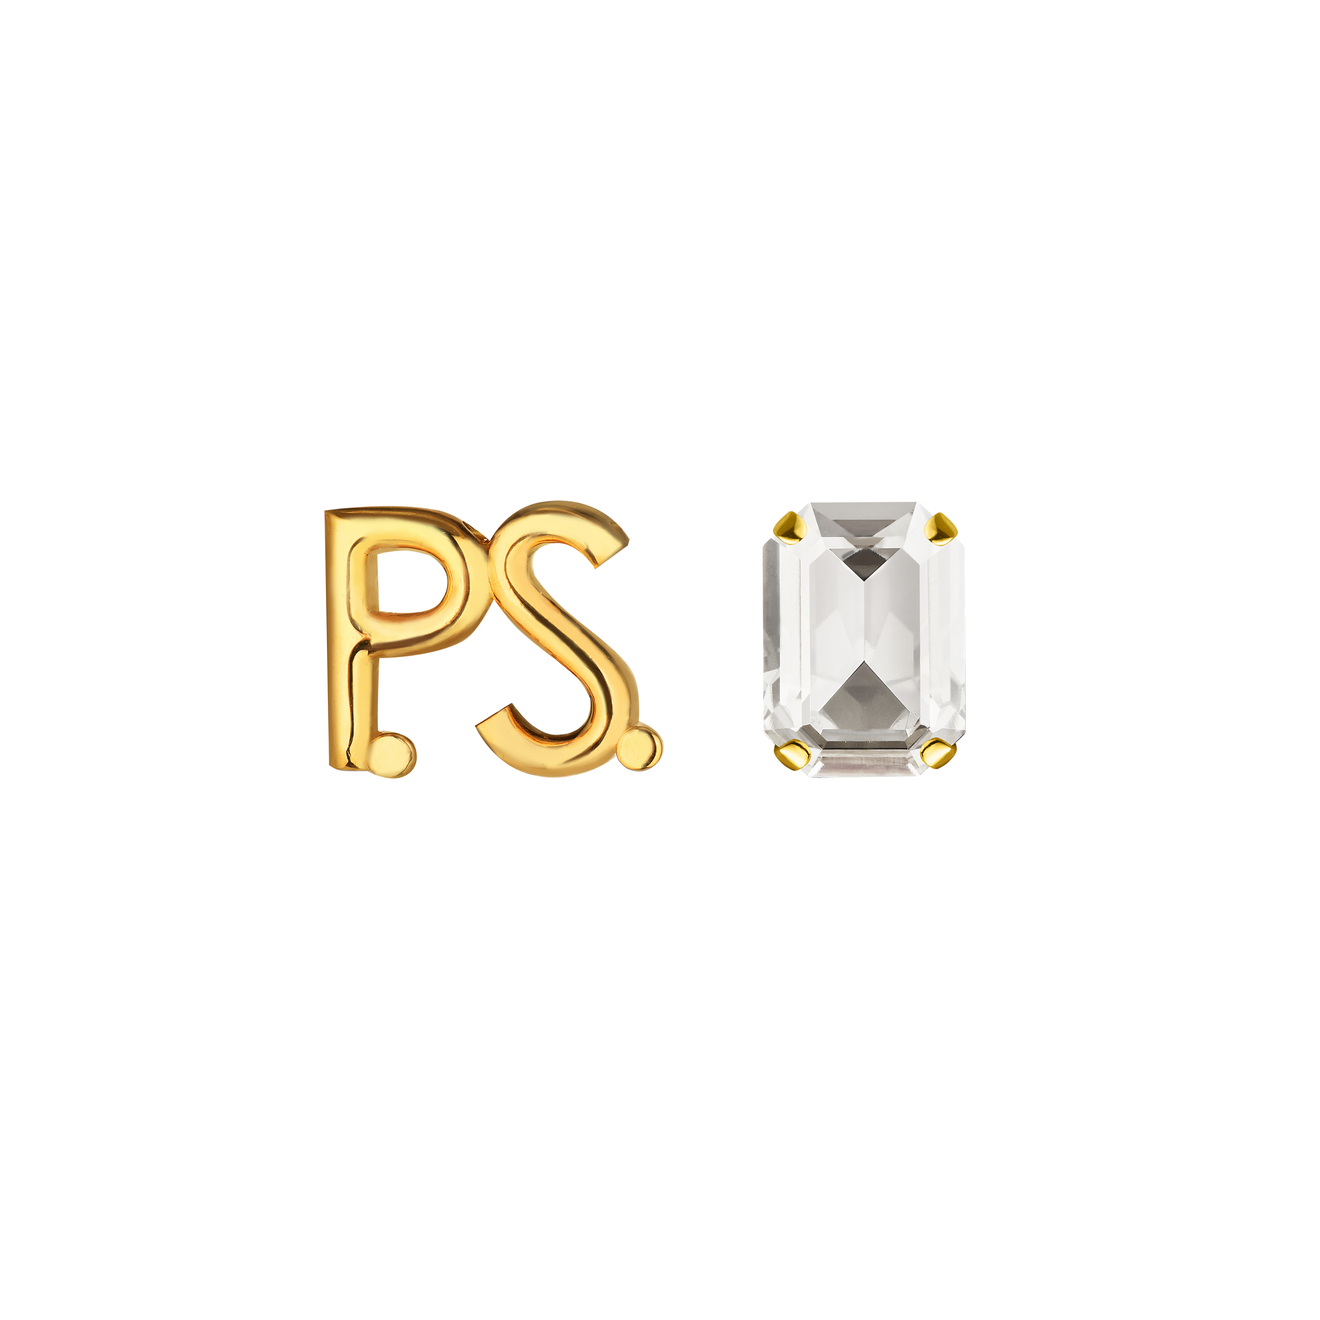 Phenomenal Studio Позолоченные серьги с фирменным логотипом и крупным кристаллом P.S. Crystal Gold серьги phenomenal studio step cut gold earrings